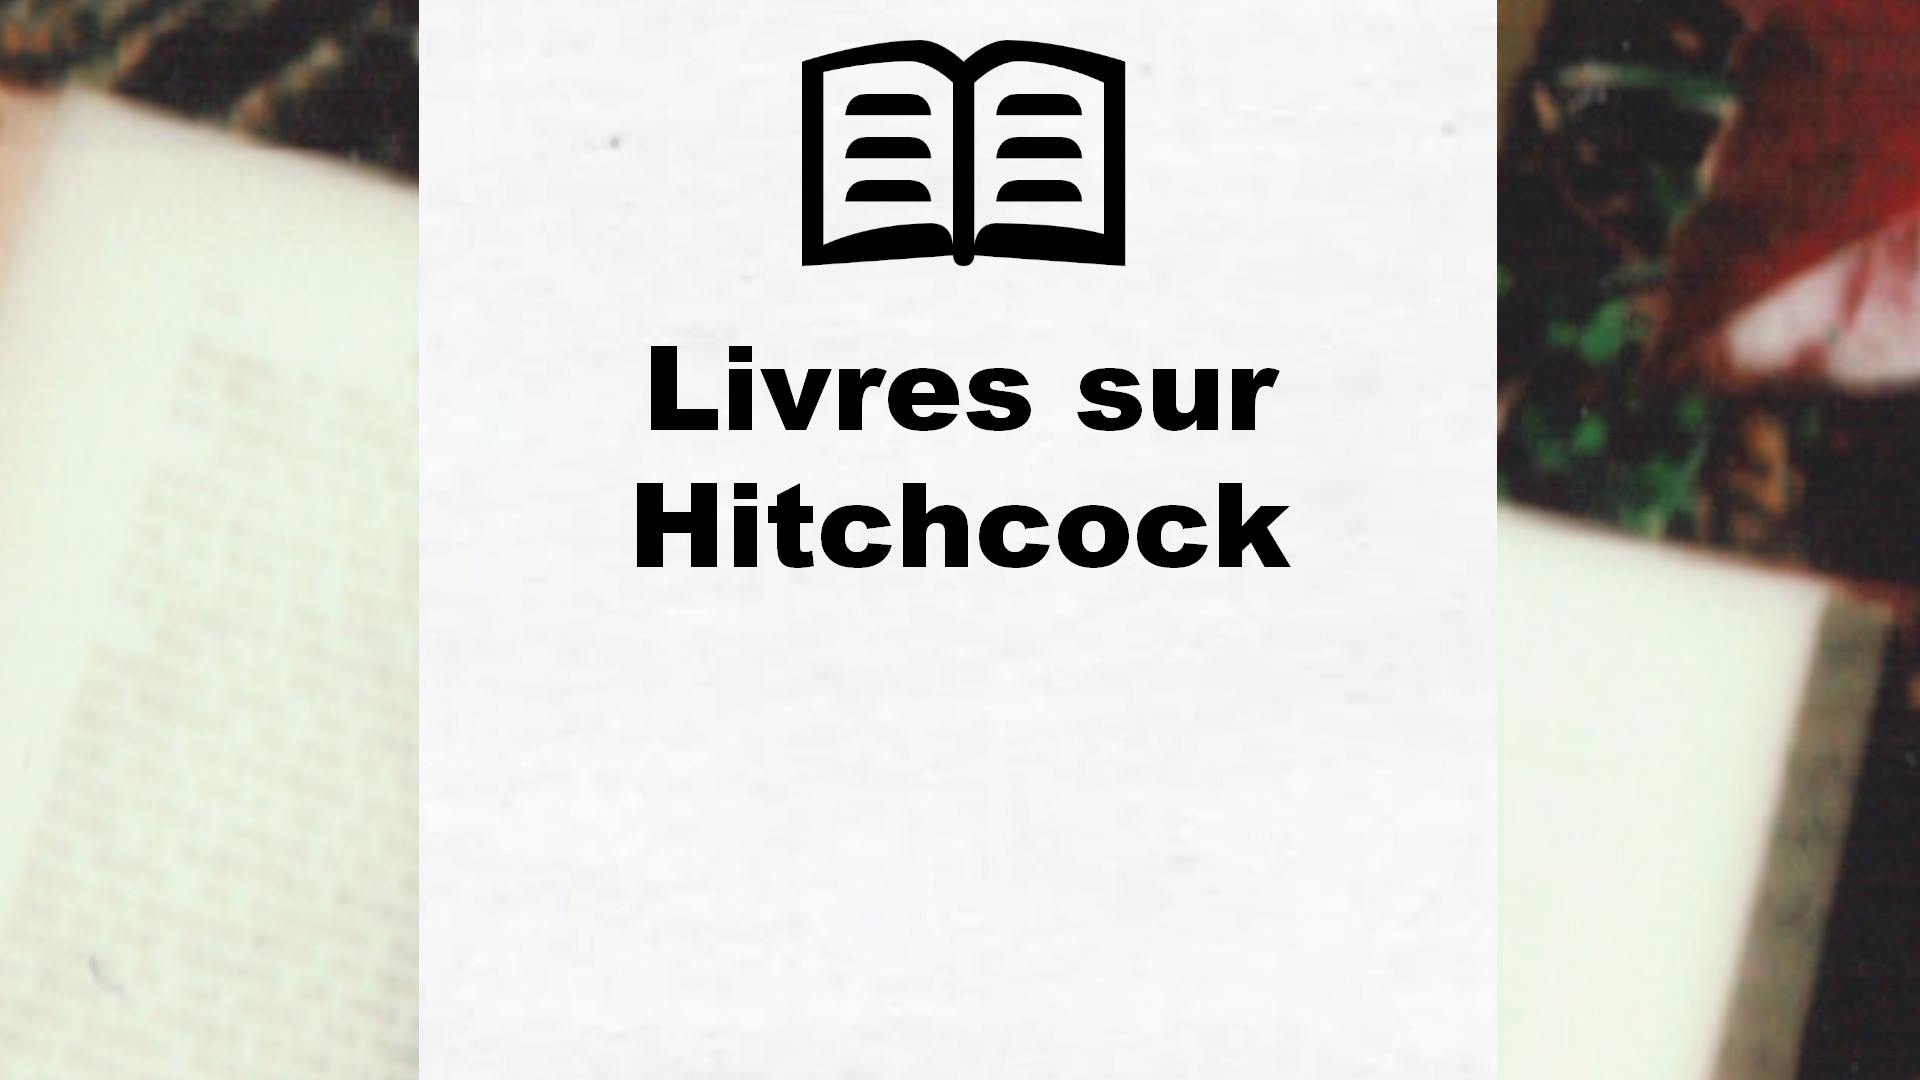 Livres sur Hitchcock